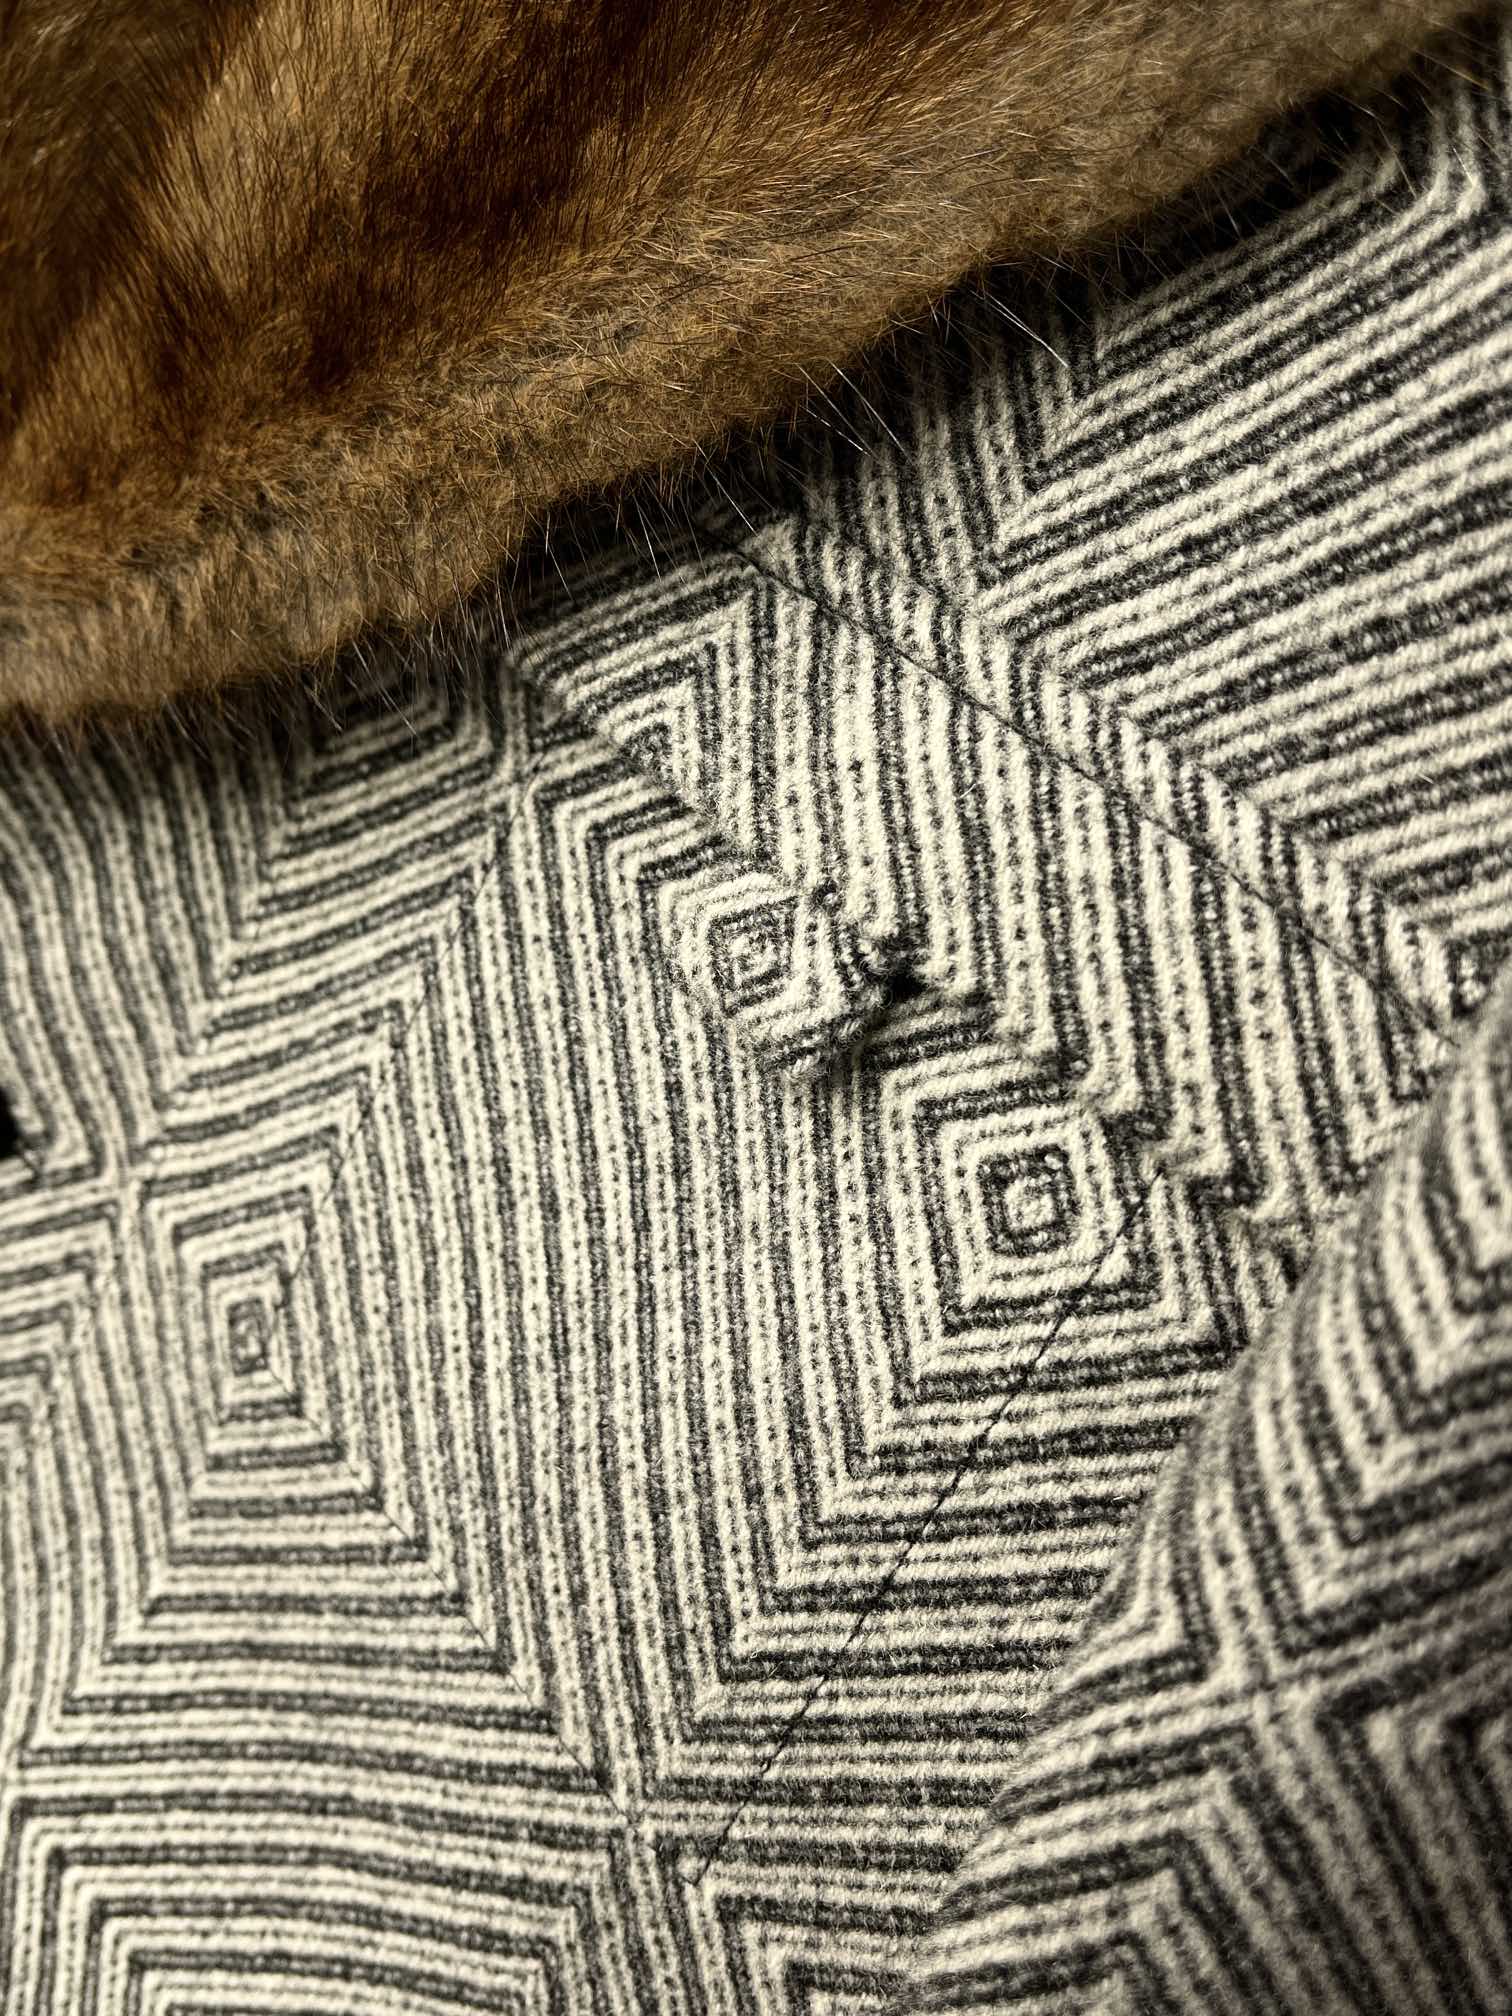 典藏奢华进口北美青根貂毛领特织几何图形羊绒混纺长款大衣给亲们介绍分享极力推荐一件合身的大衣上它们是冬天绝